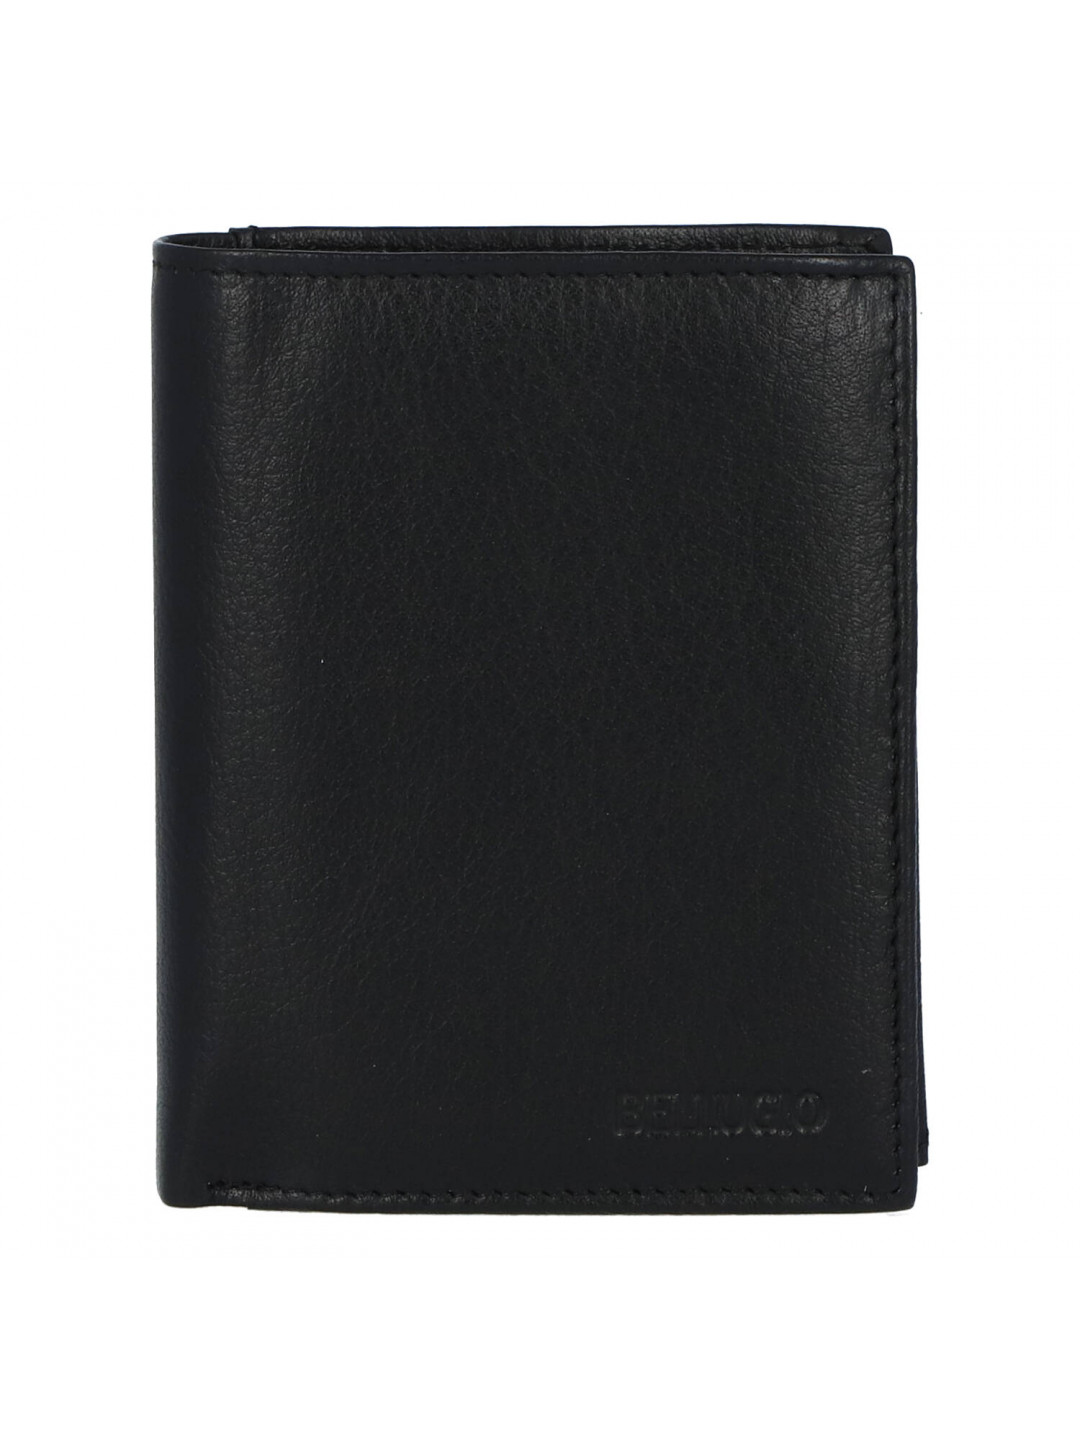 Praktická a jednoduchá pánská kožená peněženka Henrich černá